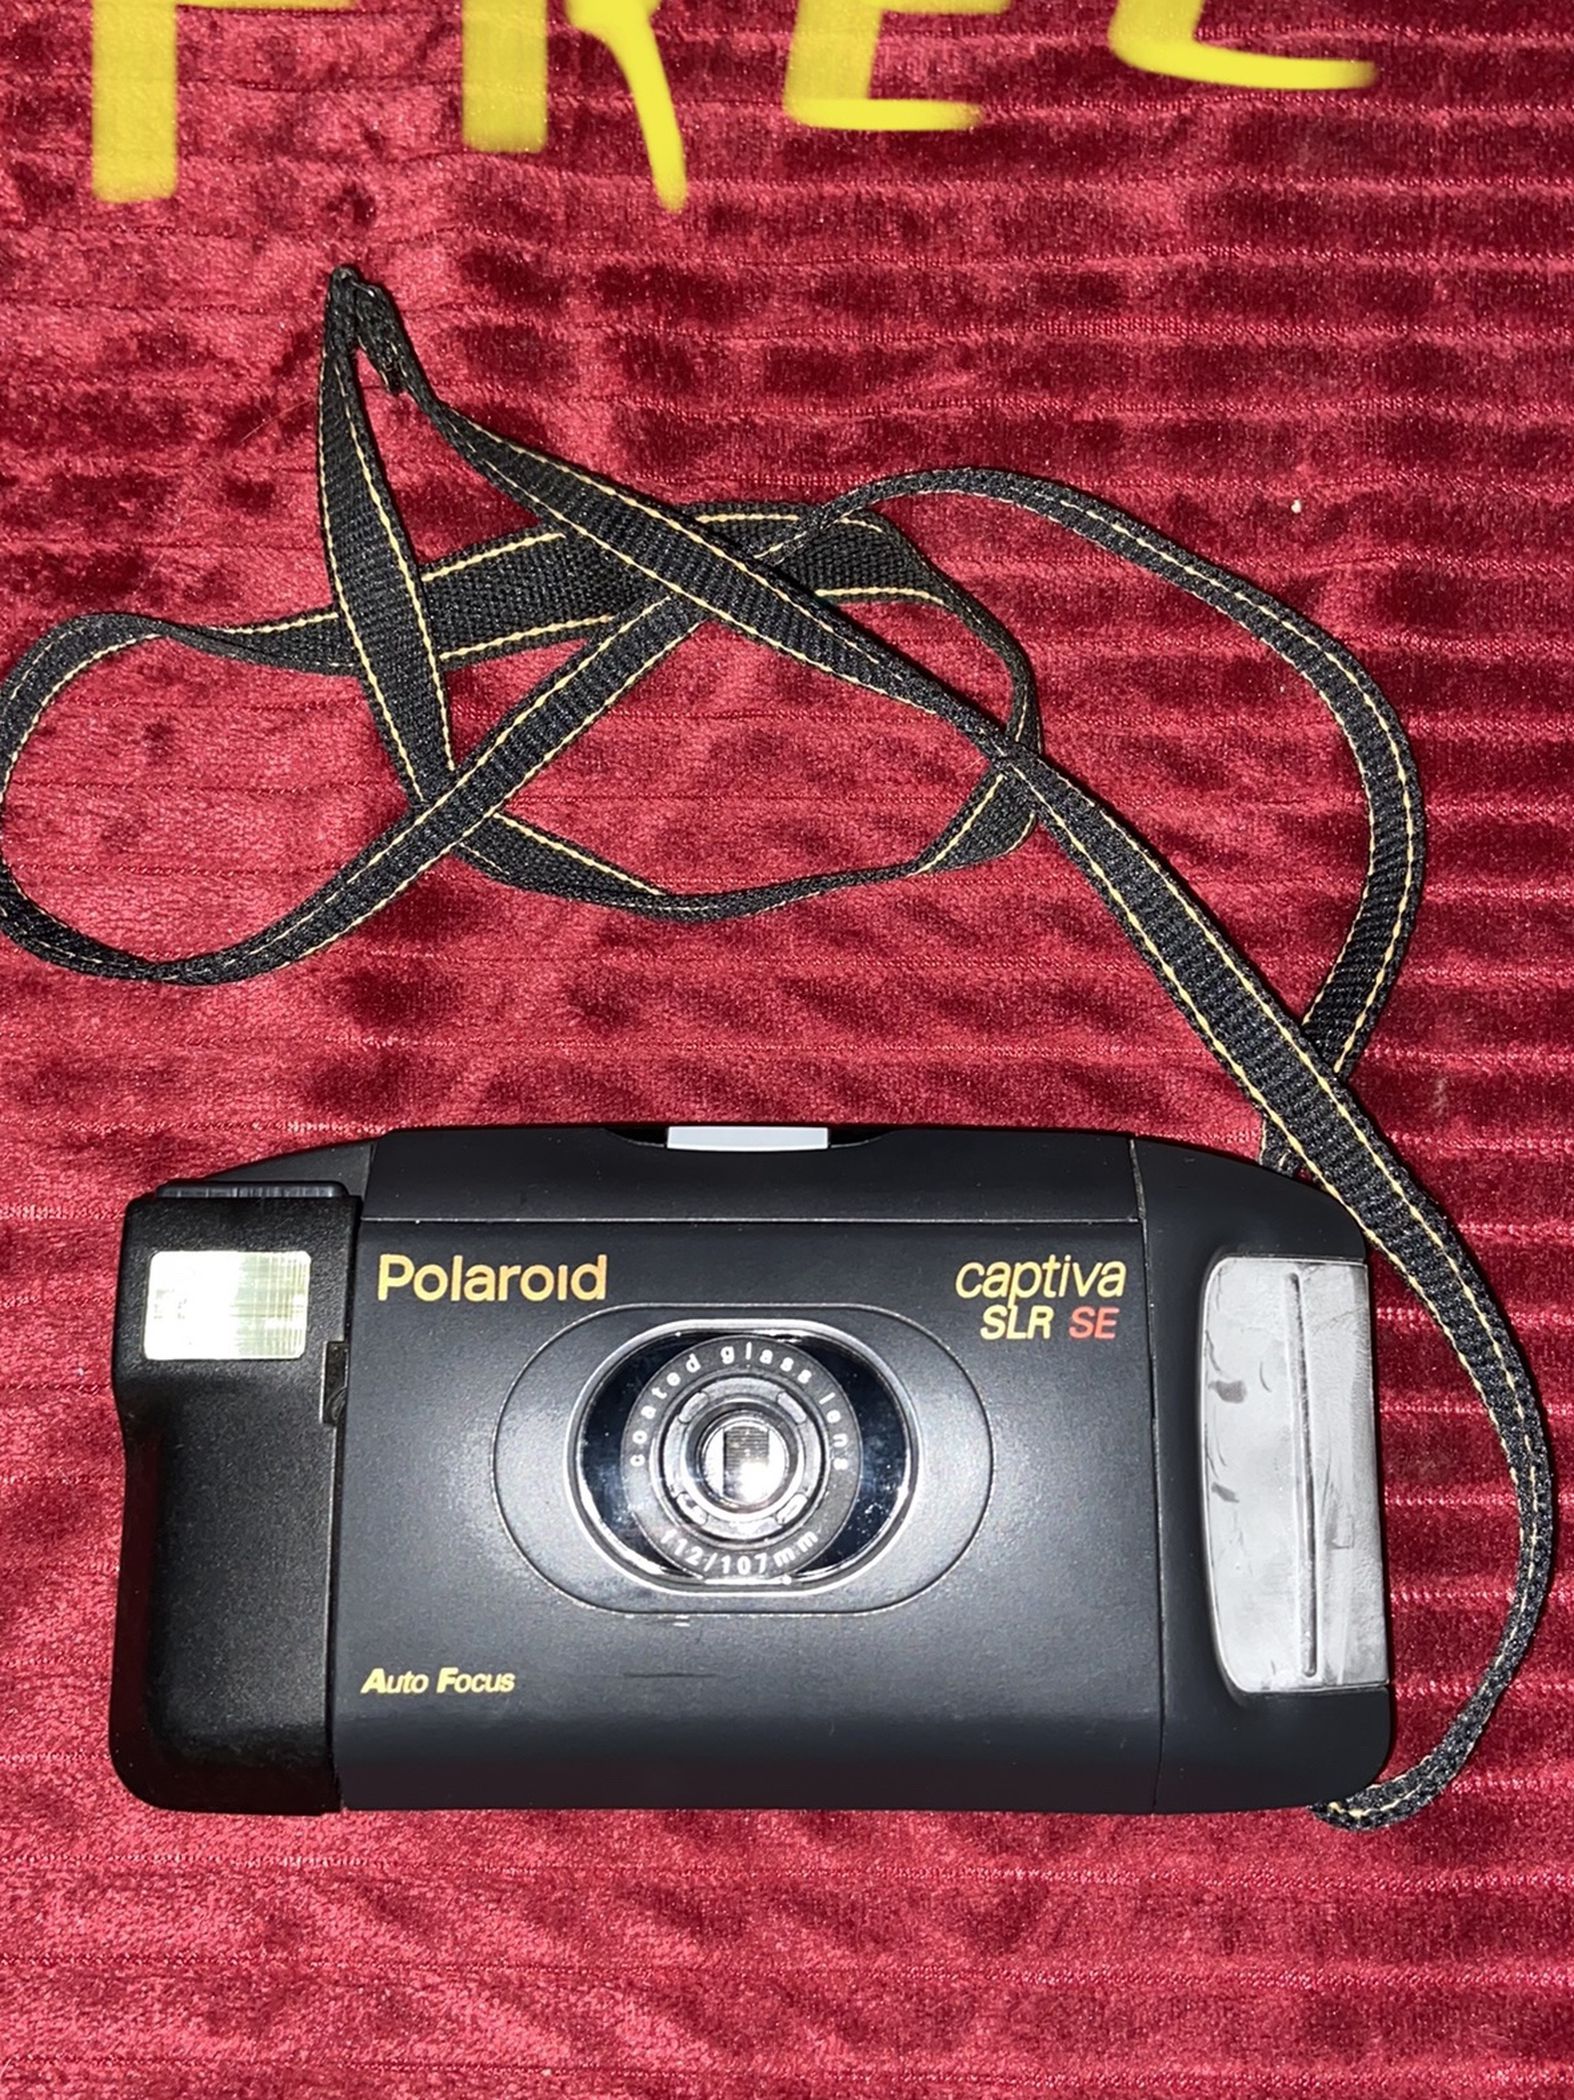 Free - Polaroid Captiva SLR SE Camera